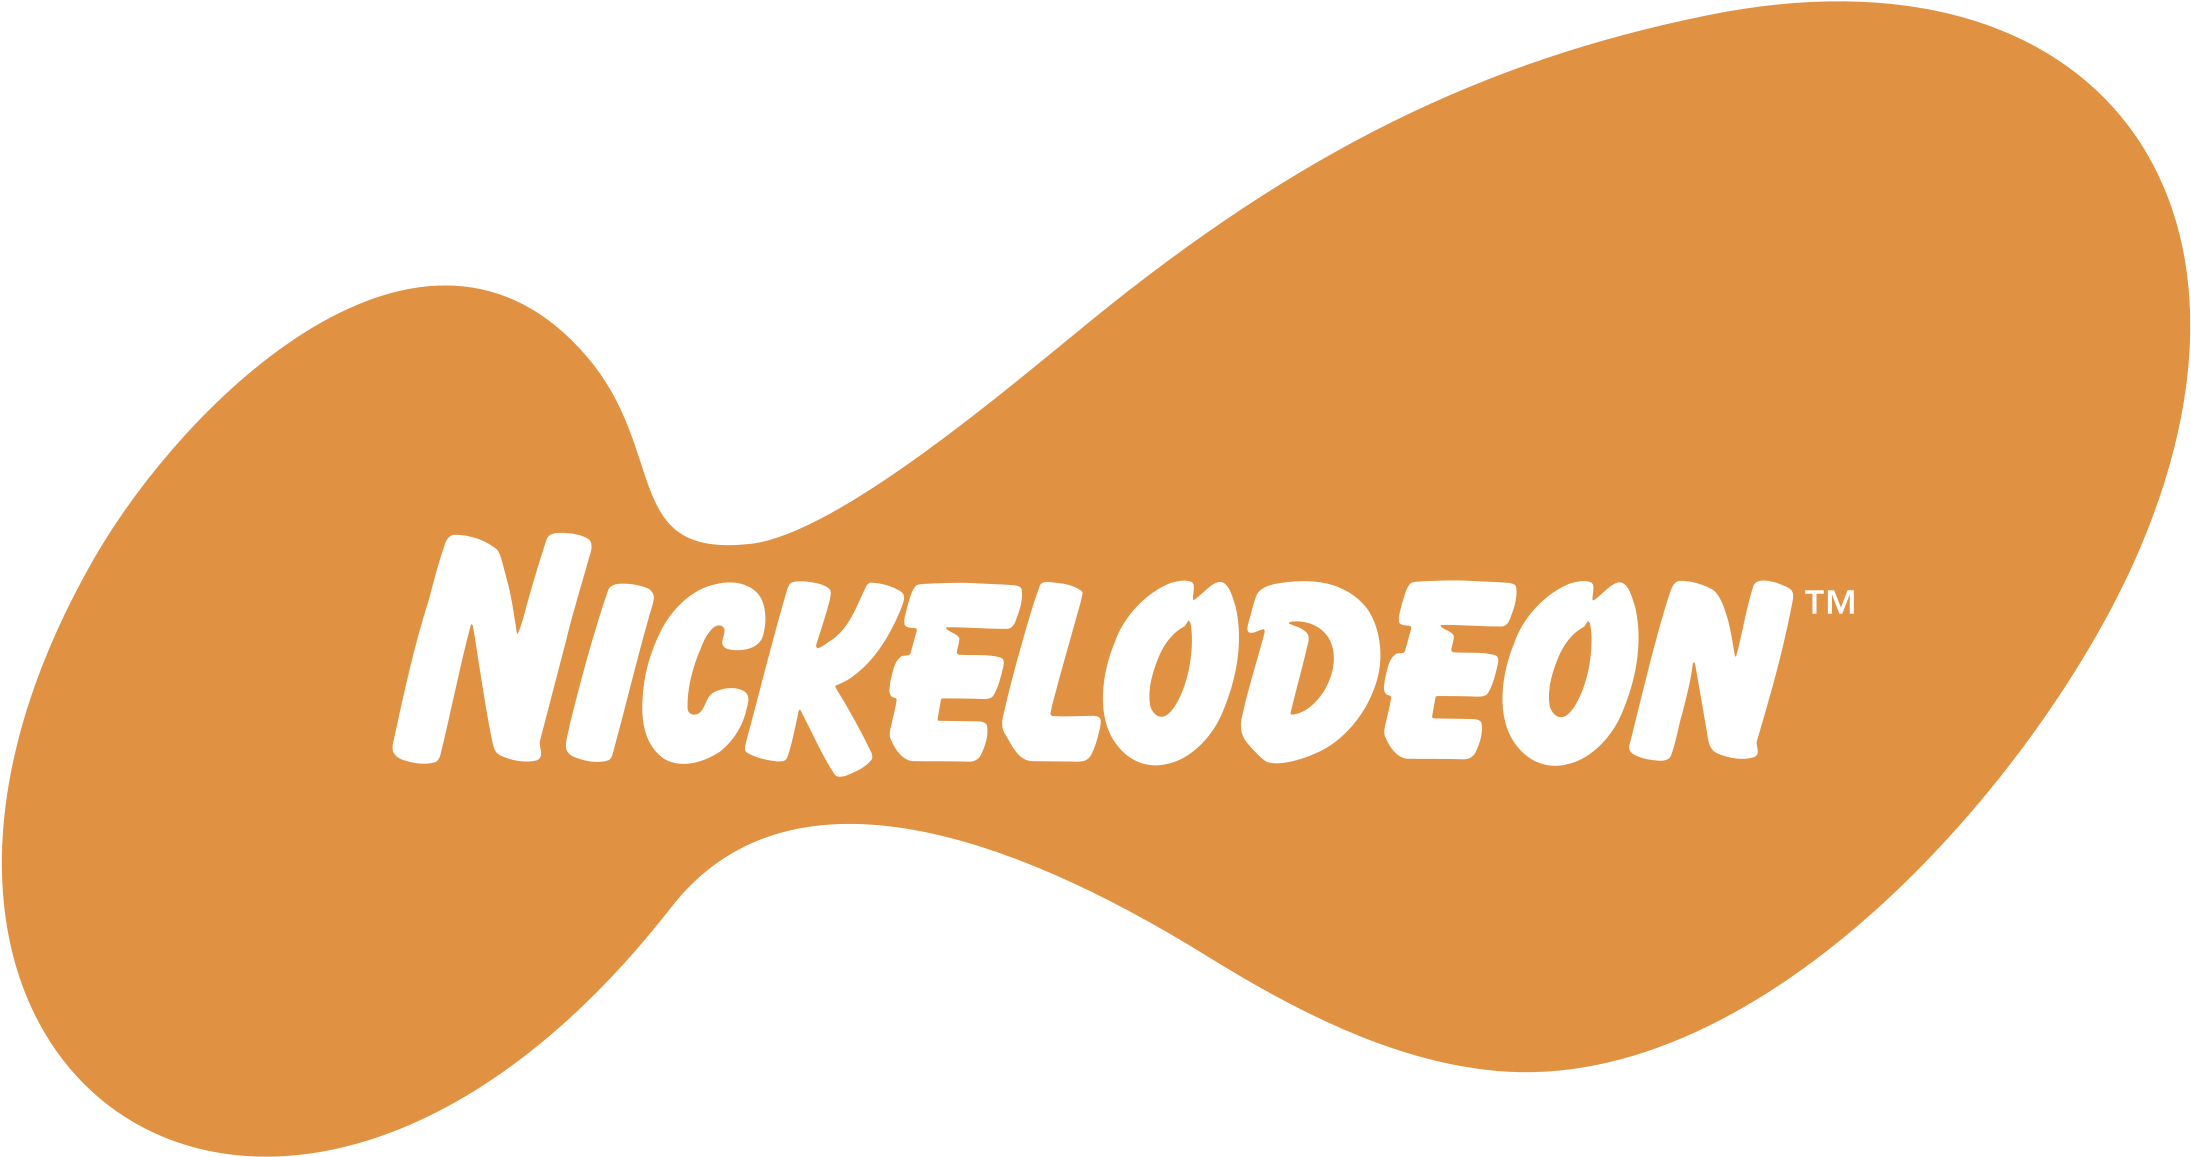 Nickelodeon Logo Download Free PNG